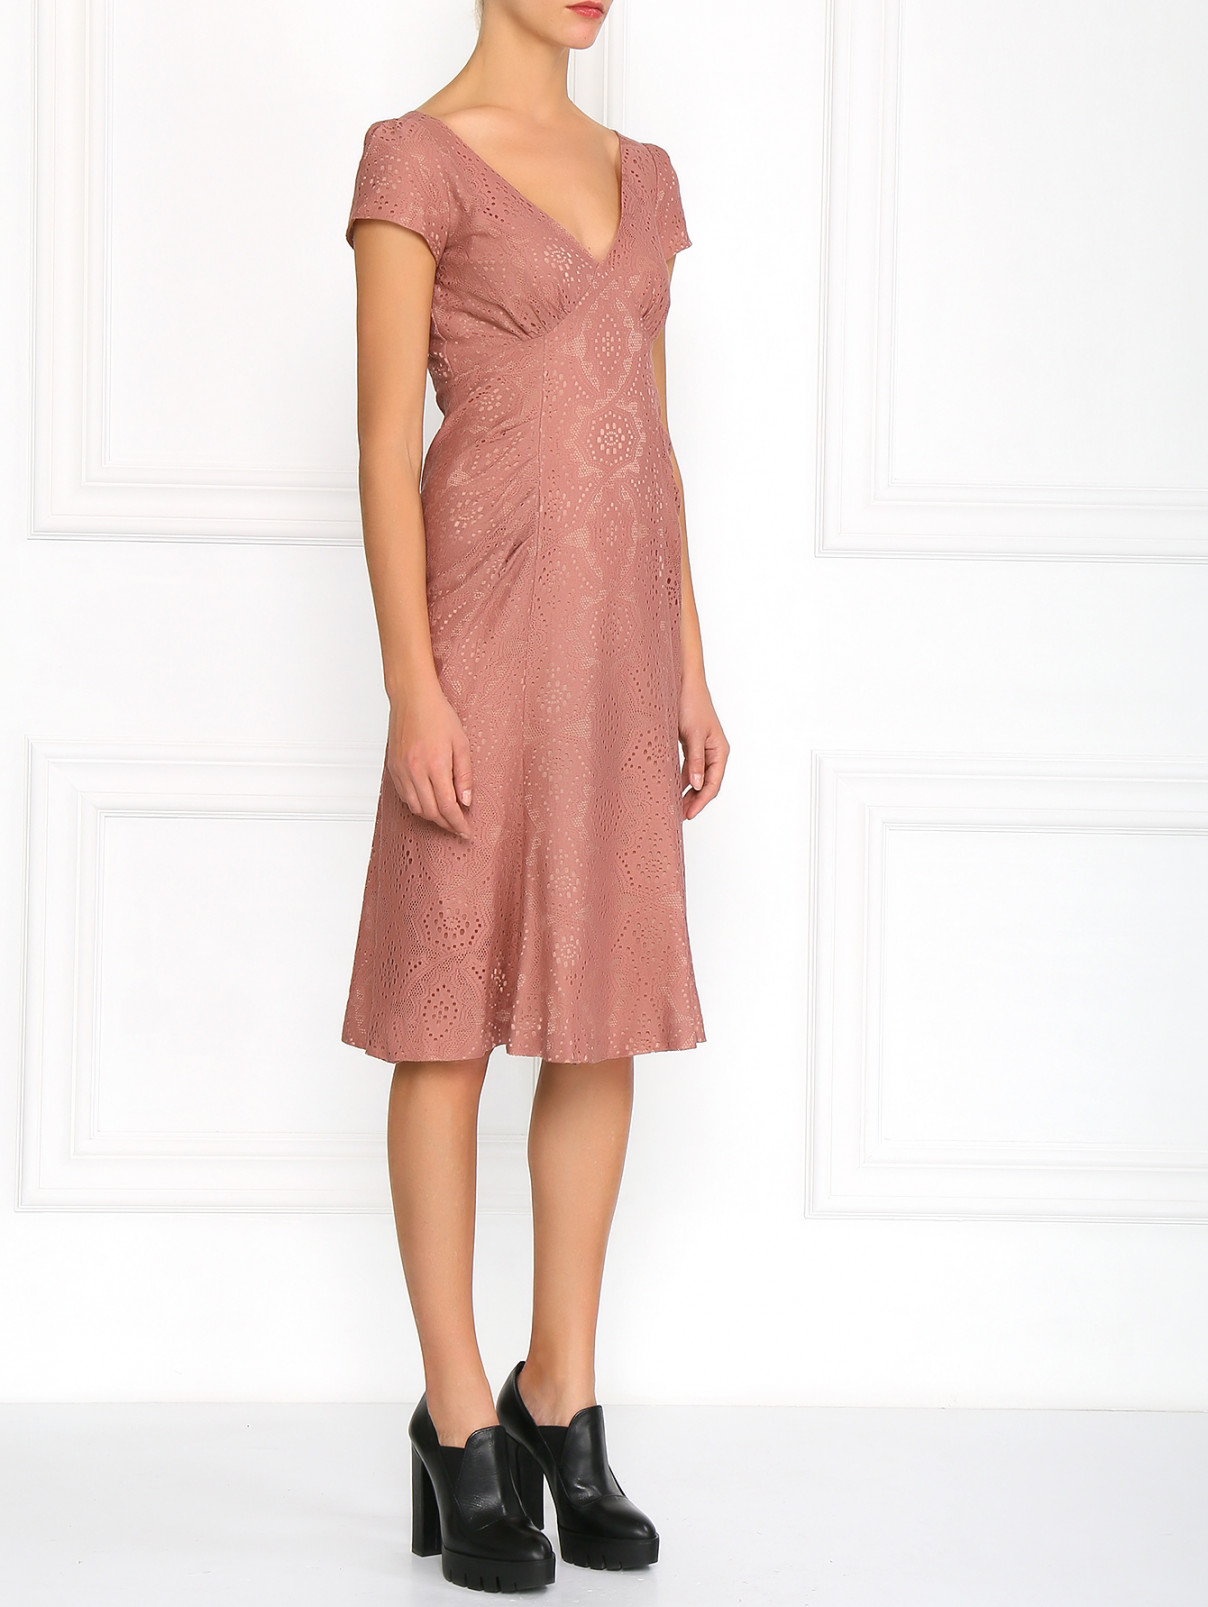 Платье декорированное кружевом Moschino  –  Модель Общий вид  – Цвет:  Розовый